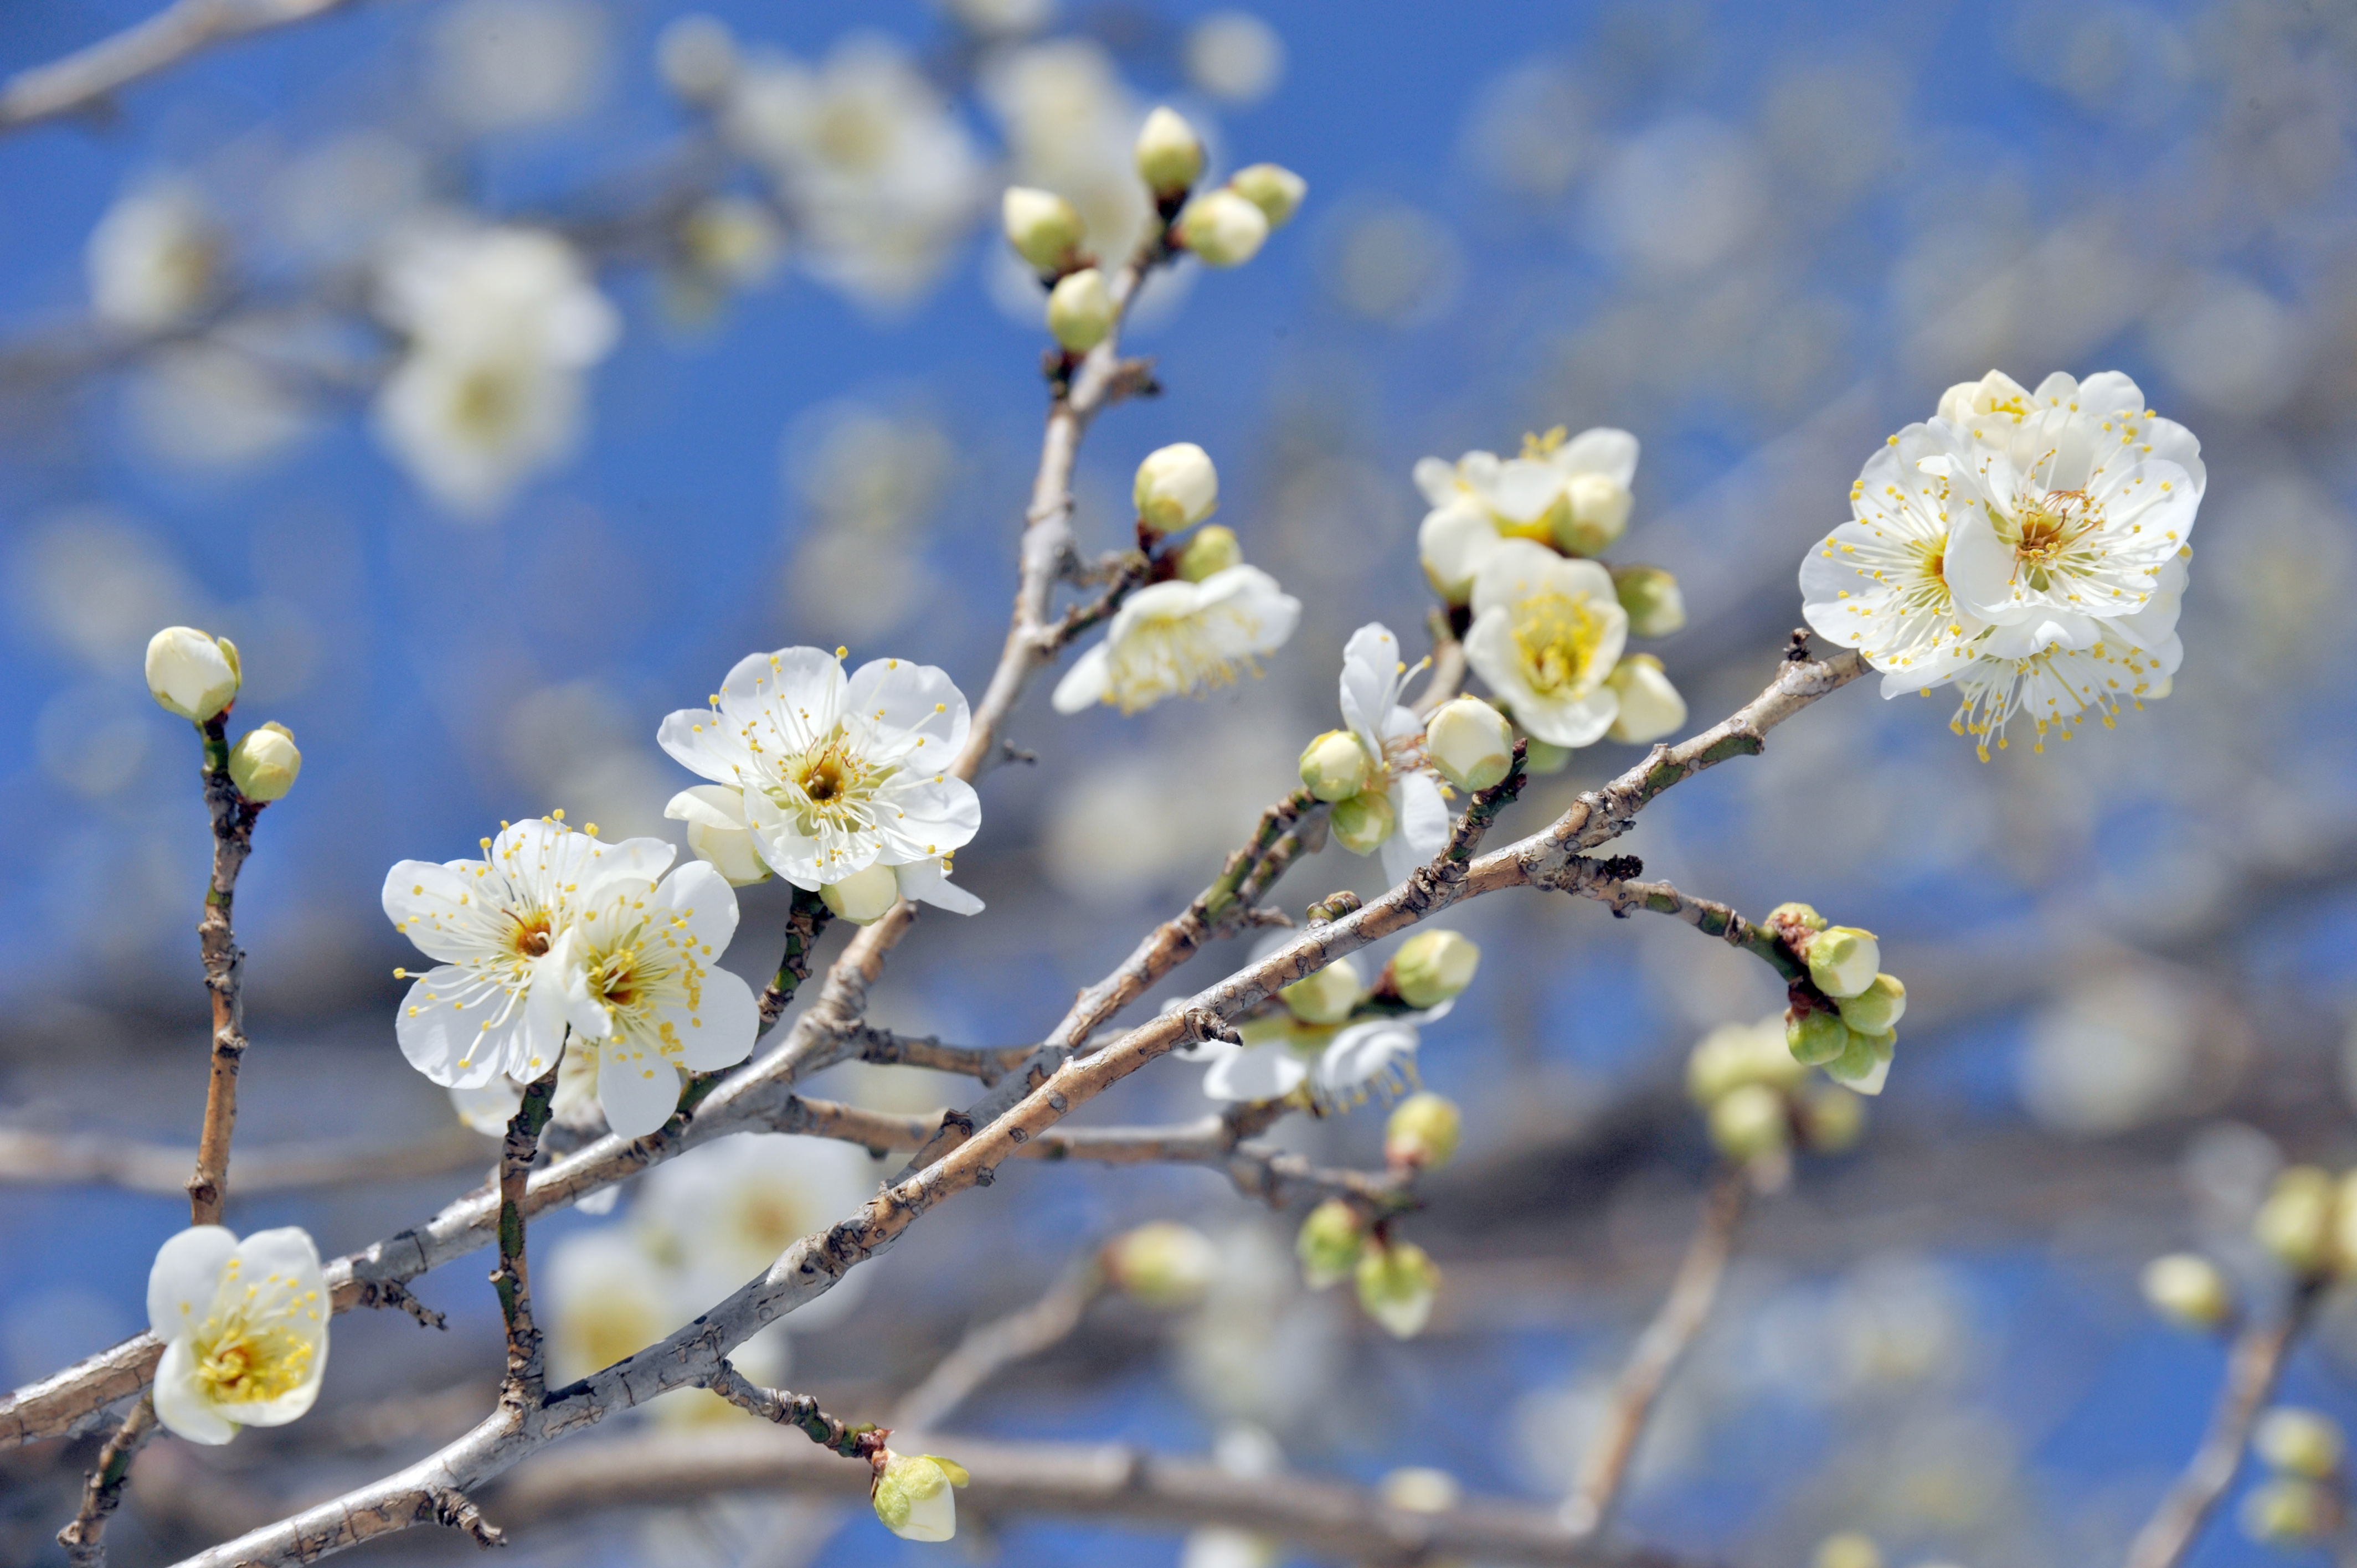 写真素材無料サイトT-Photo Share(フォトシェア) / 梅の花